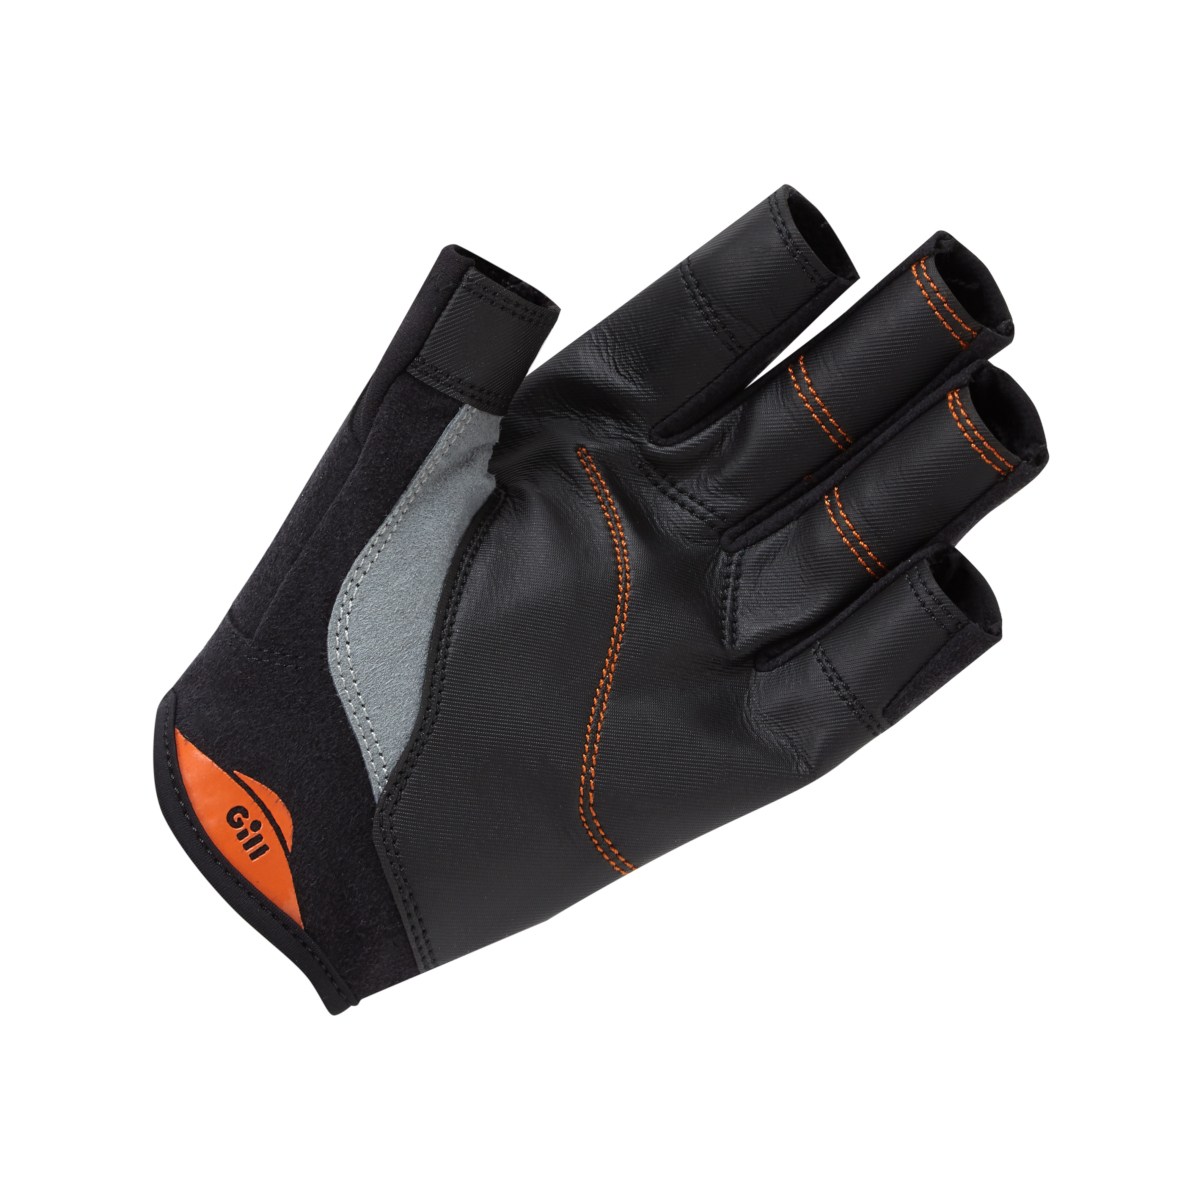 Gill Championship gants de voile à doigts courts - noir, taille S